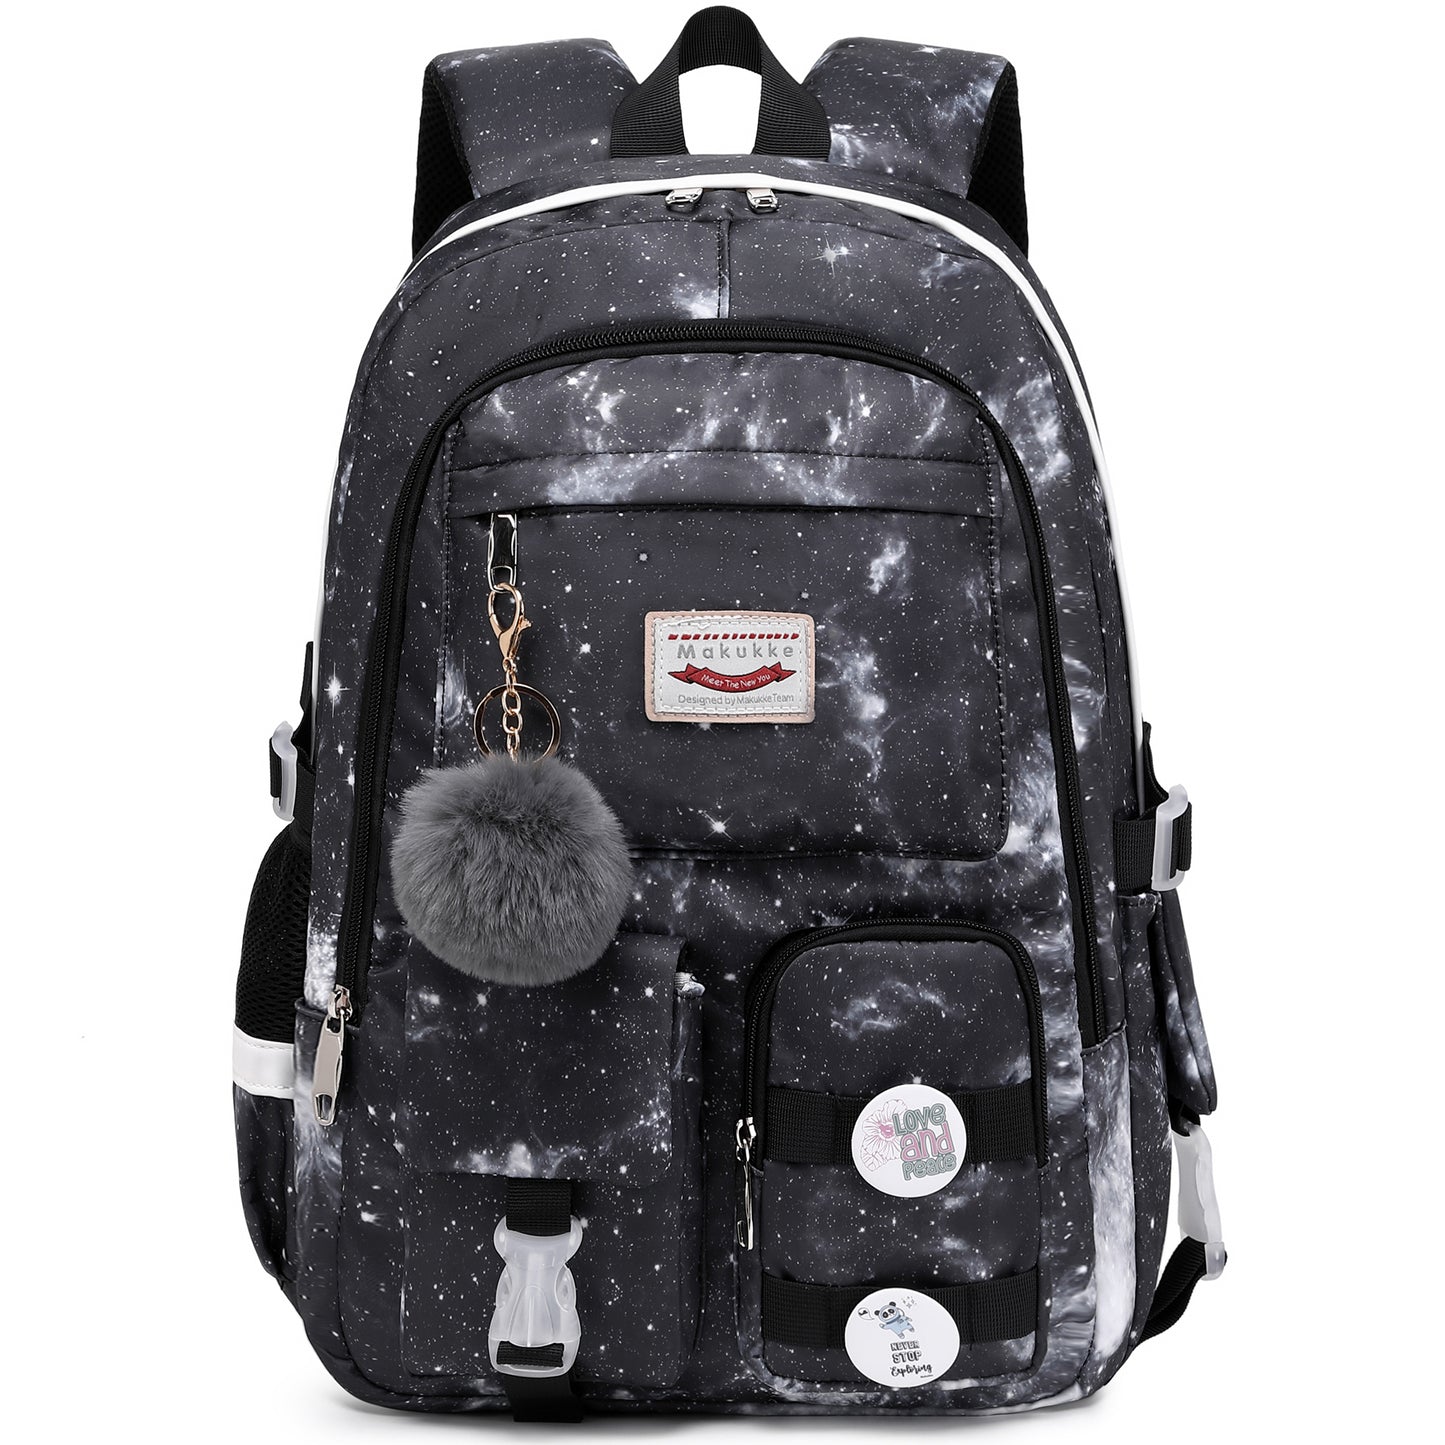 Makukke School Backpack for Teen